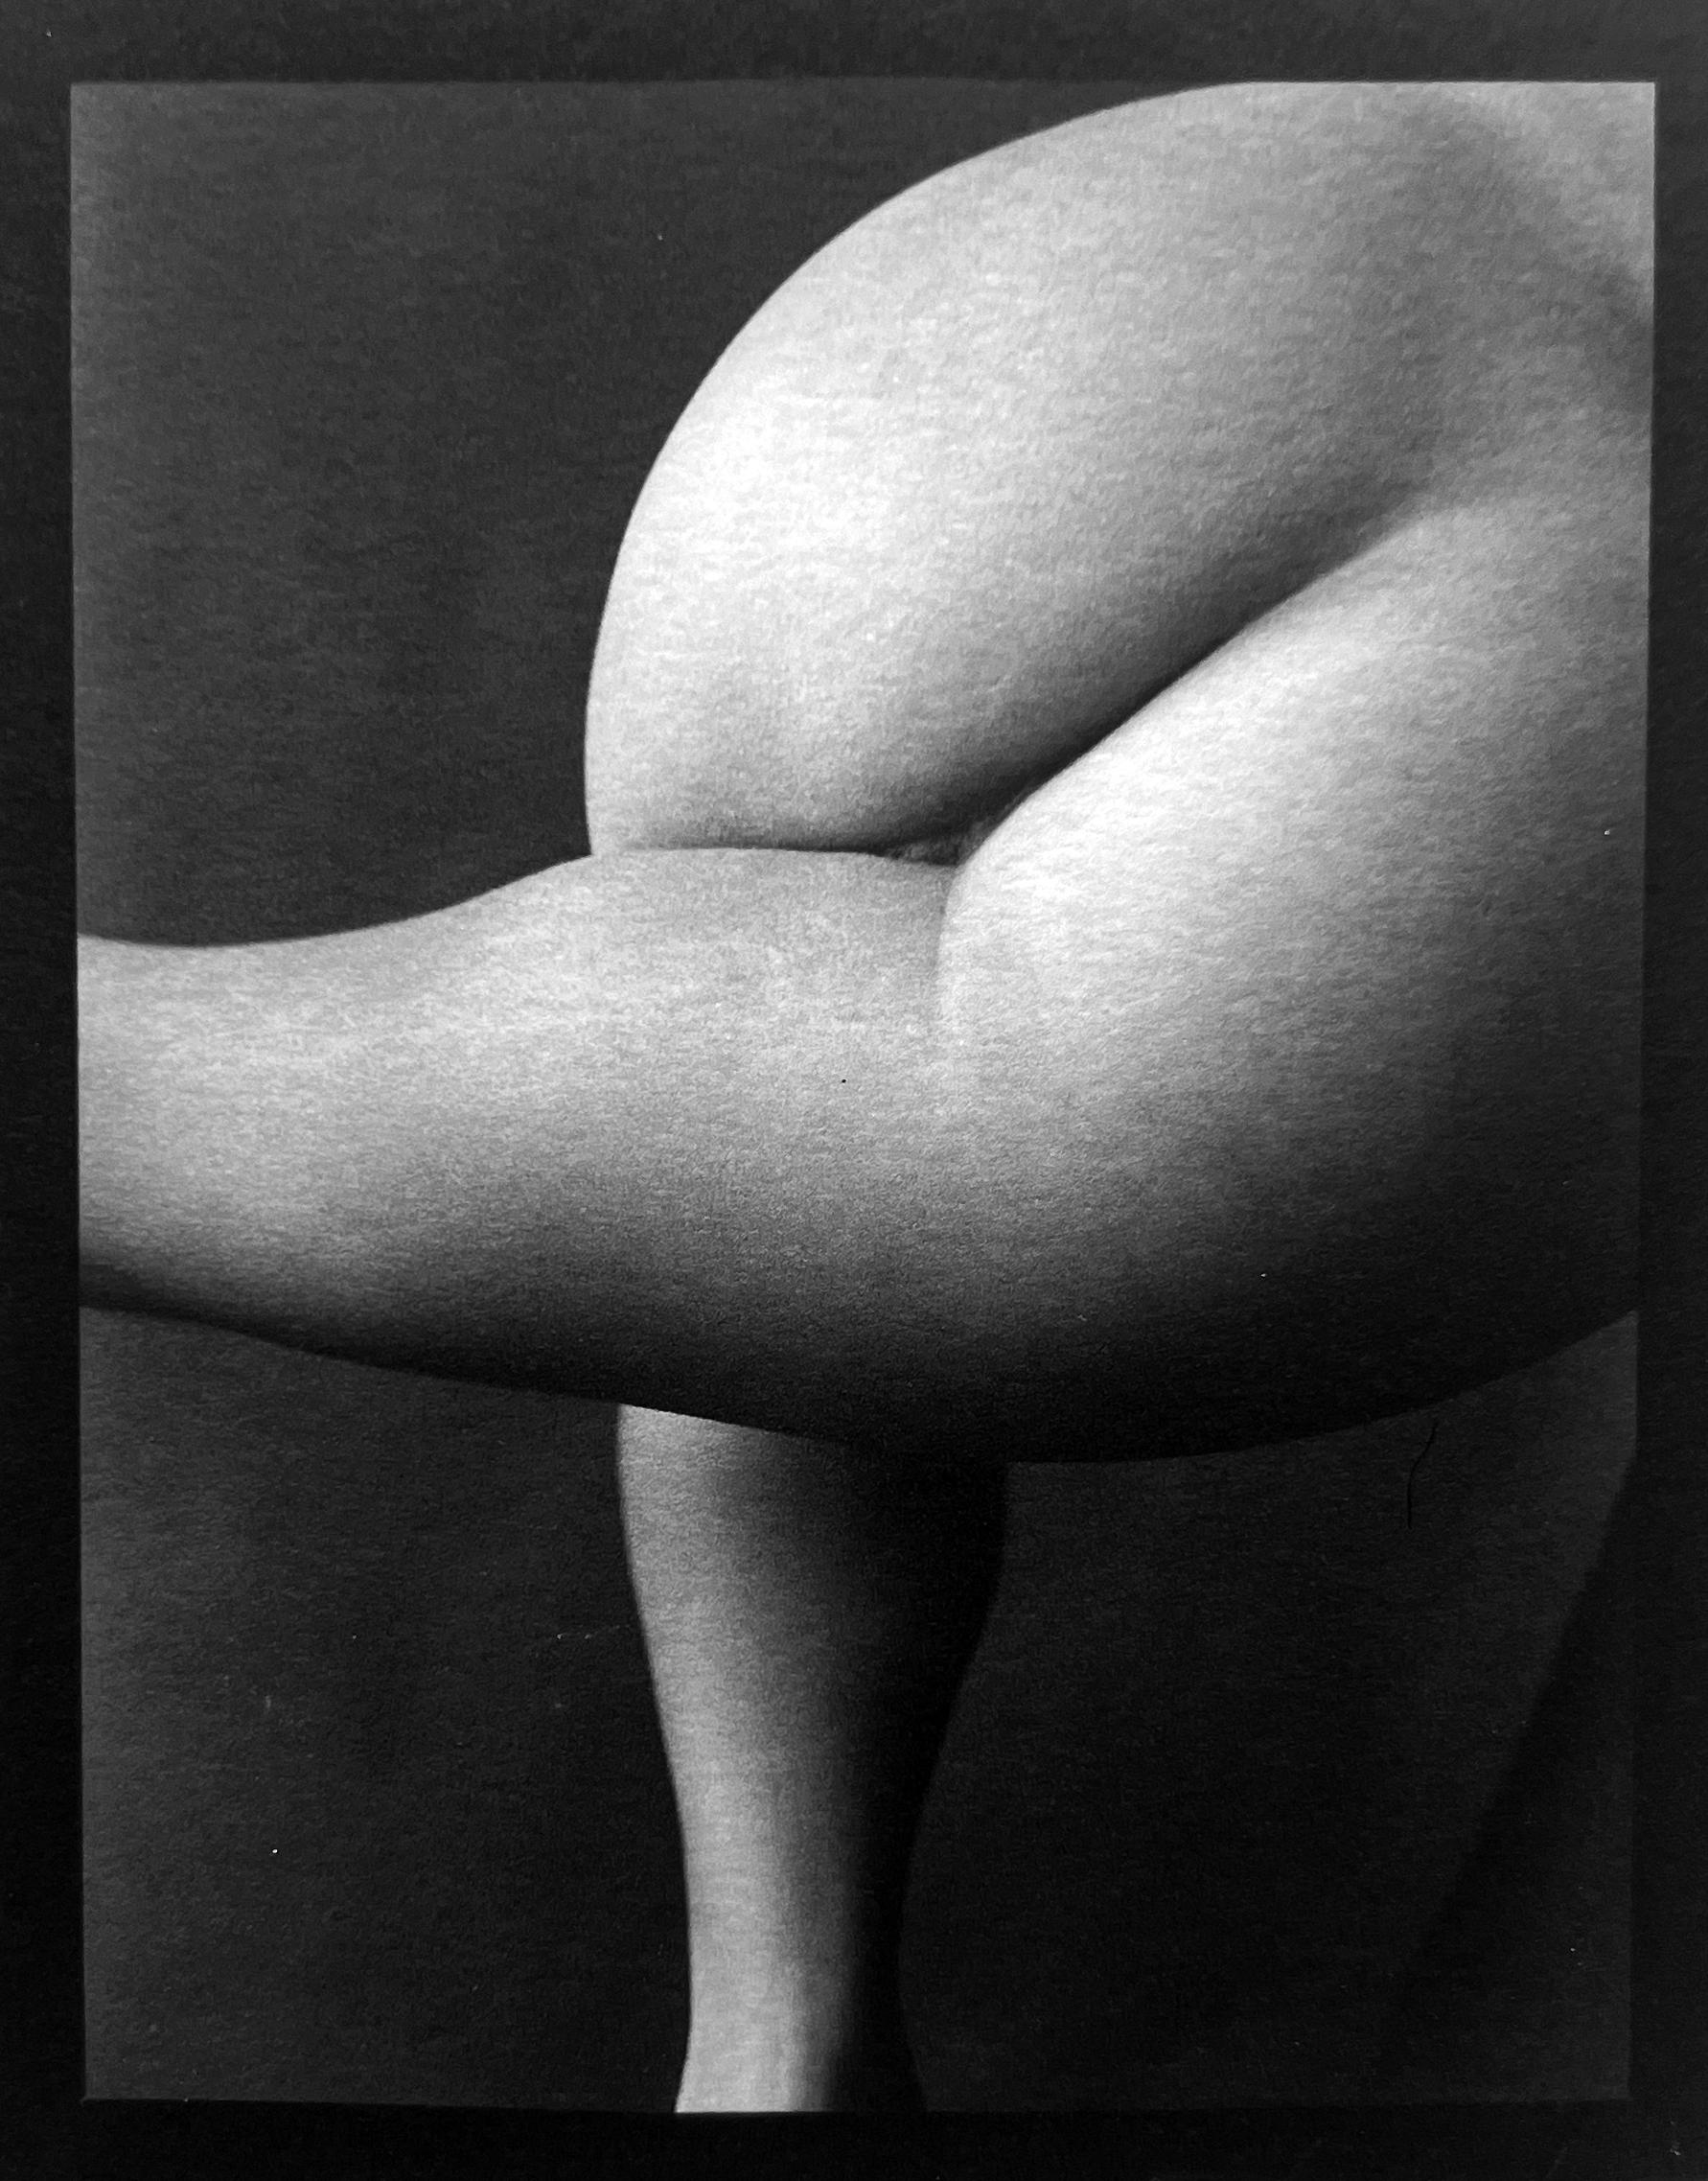 Carl Hyatt Black and White Photograph – Aktfotografie #61, Abstrakte Fotografie mit Platindruck und weiblichem Akt 